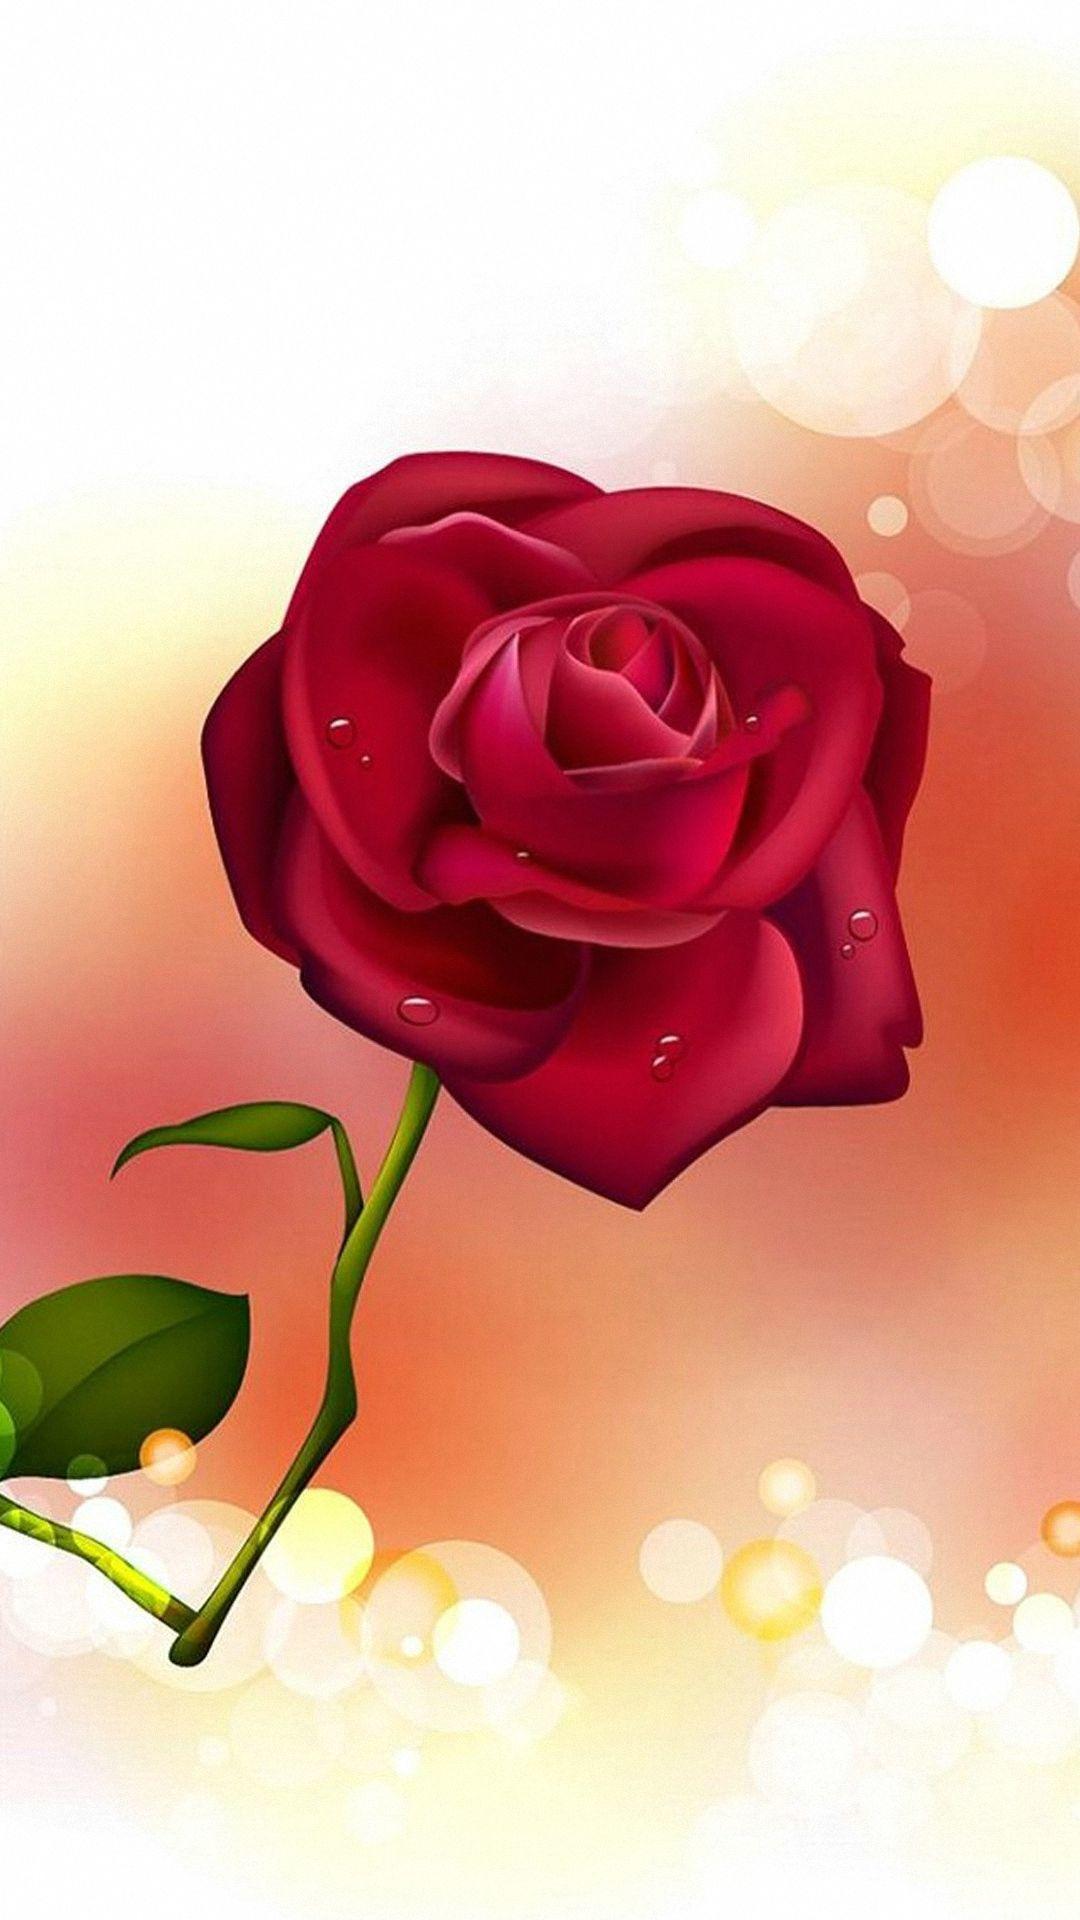 HD Rose Wallpaper For Mobile. Rose flower